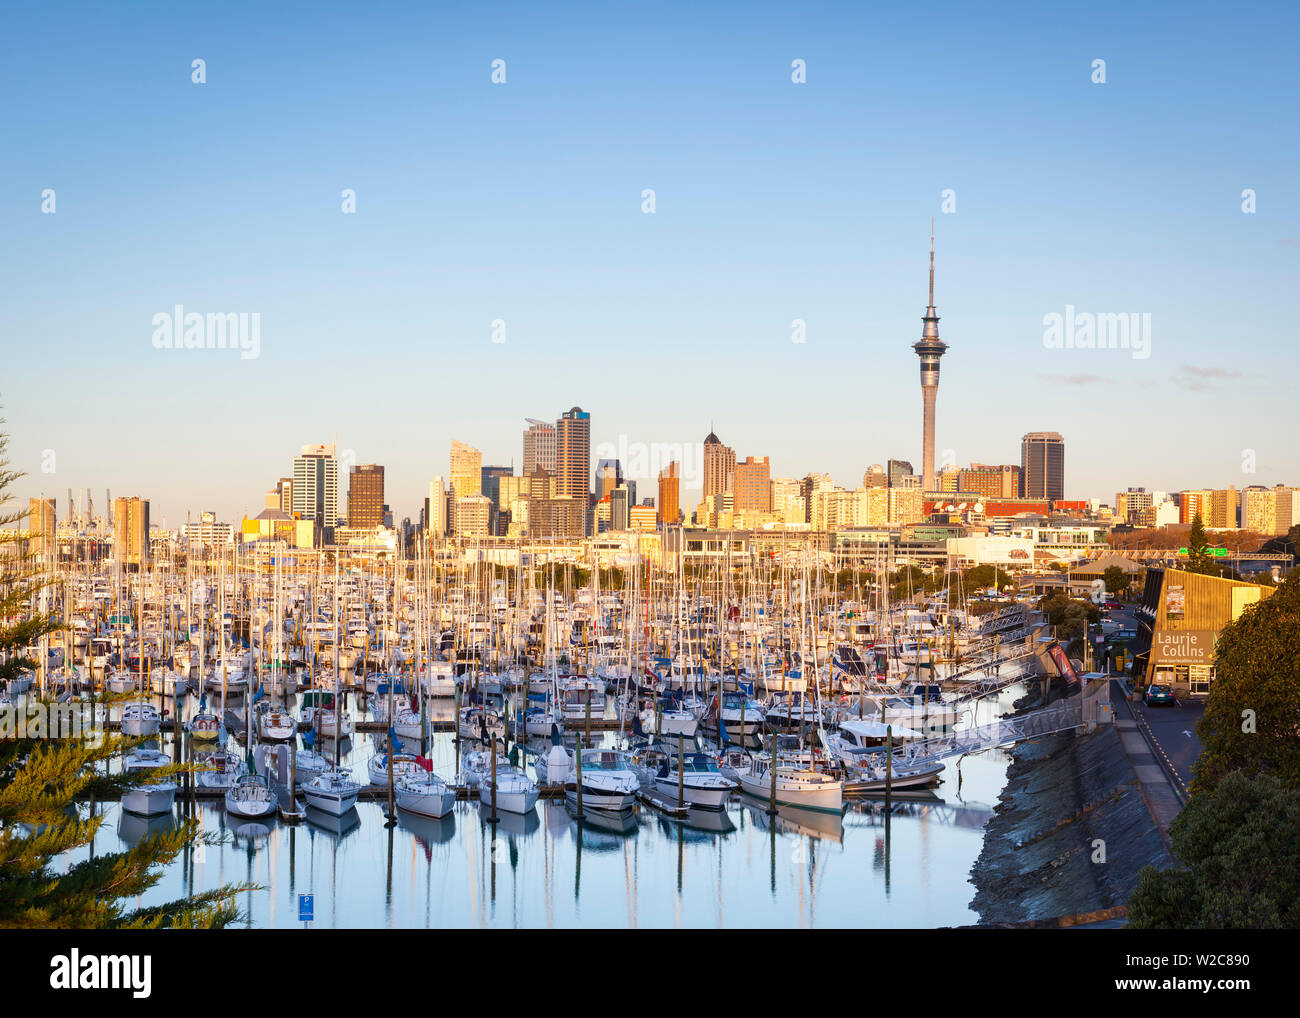 Westhaven Marina & skyline della città illuminata al tramonto, dal porto di Waitemata di Auckland, Isola del nord, Nuova Zelanda, Australasia Foto Stock